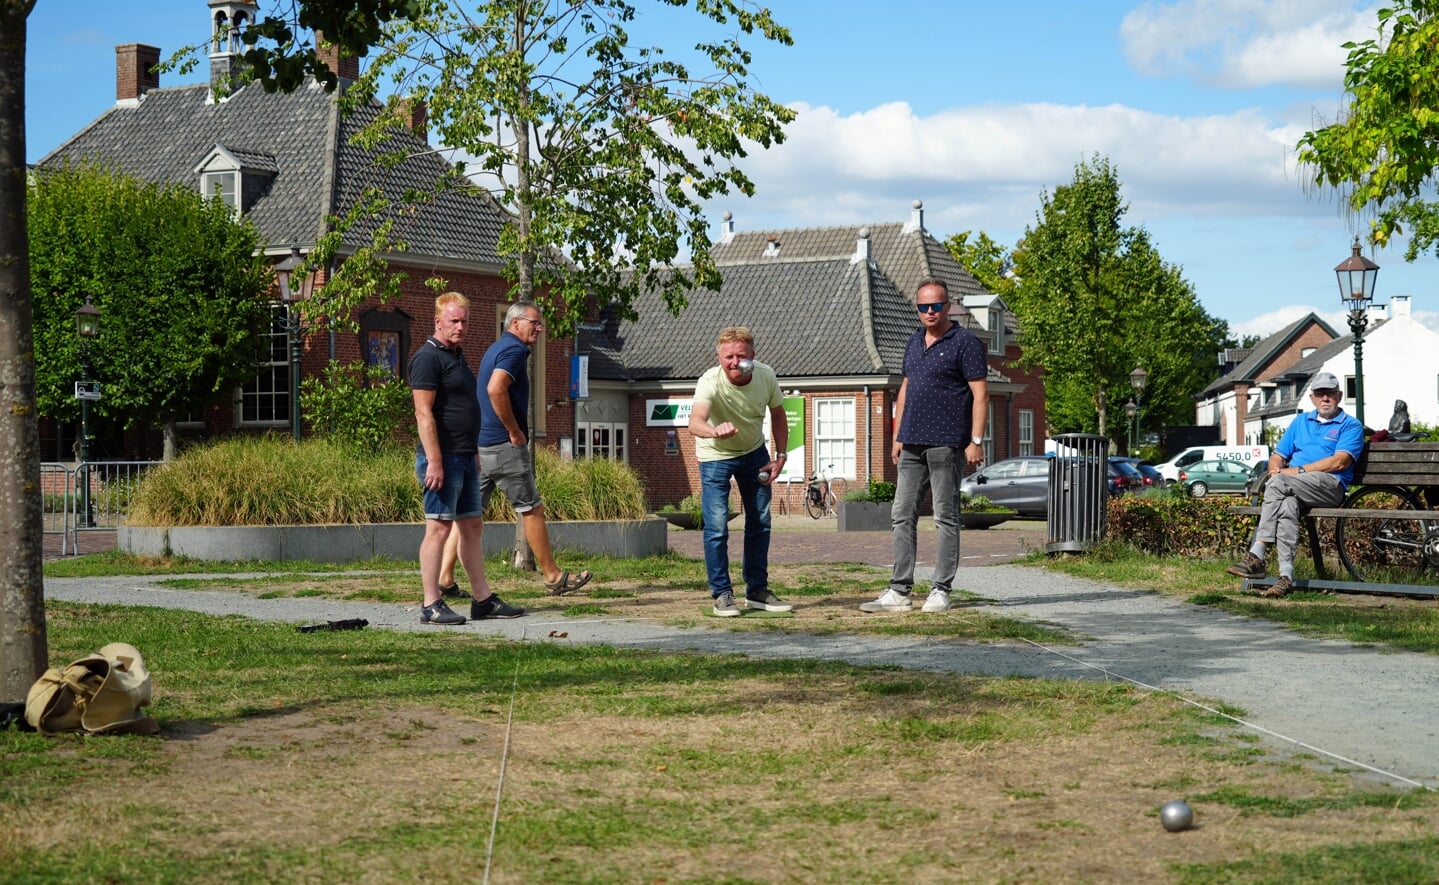 Ruim honderd jeu-de-boulesspelers deden zondag een gooi naar de winst om het Open Liempdsen Herd-kampioenschap. Andermaal gingen Ralph Meulendijk (rechts) en Arjo van Weelden uit Boxtel er met de zege vandoor.